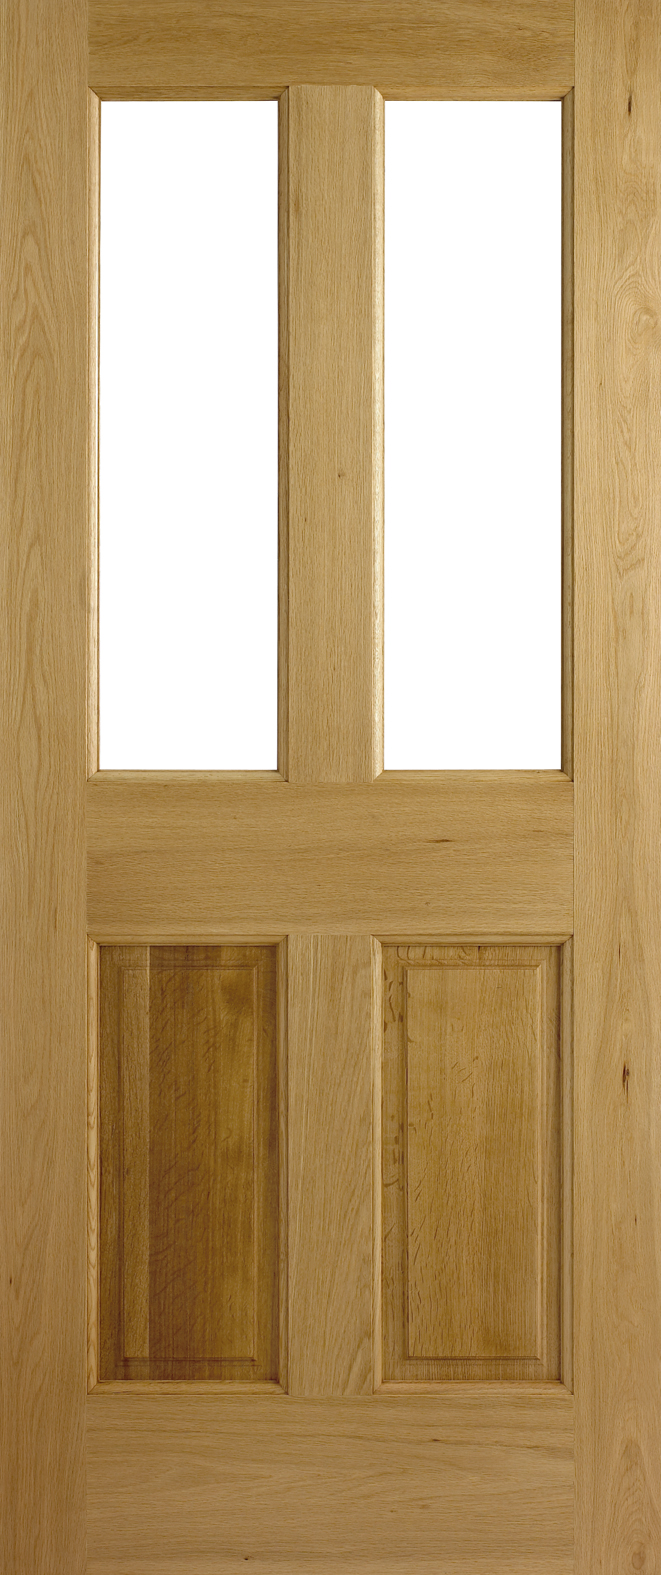 An image of Adoorable Oak Malton 4 Panel Half Unglazed External Oak Veneer Doors